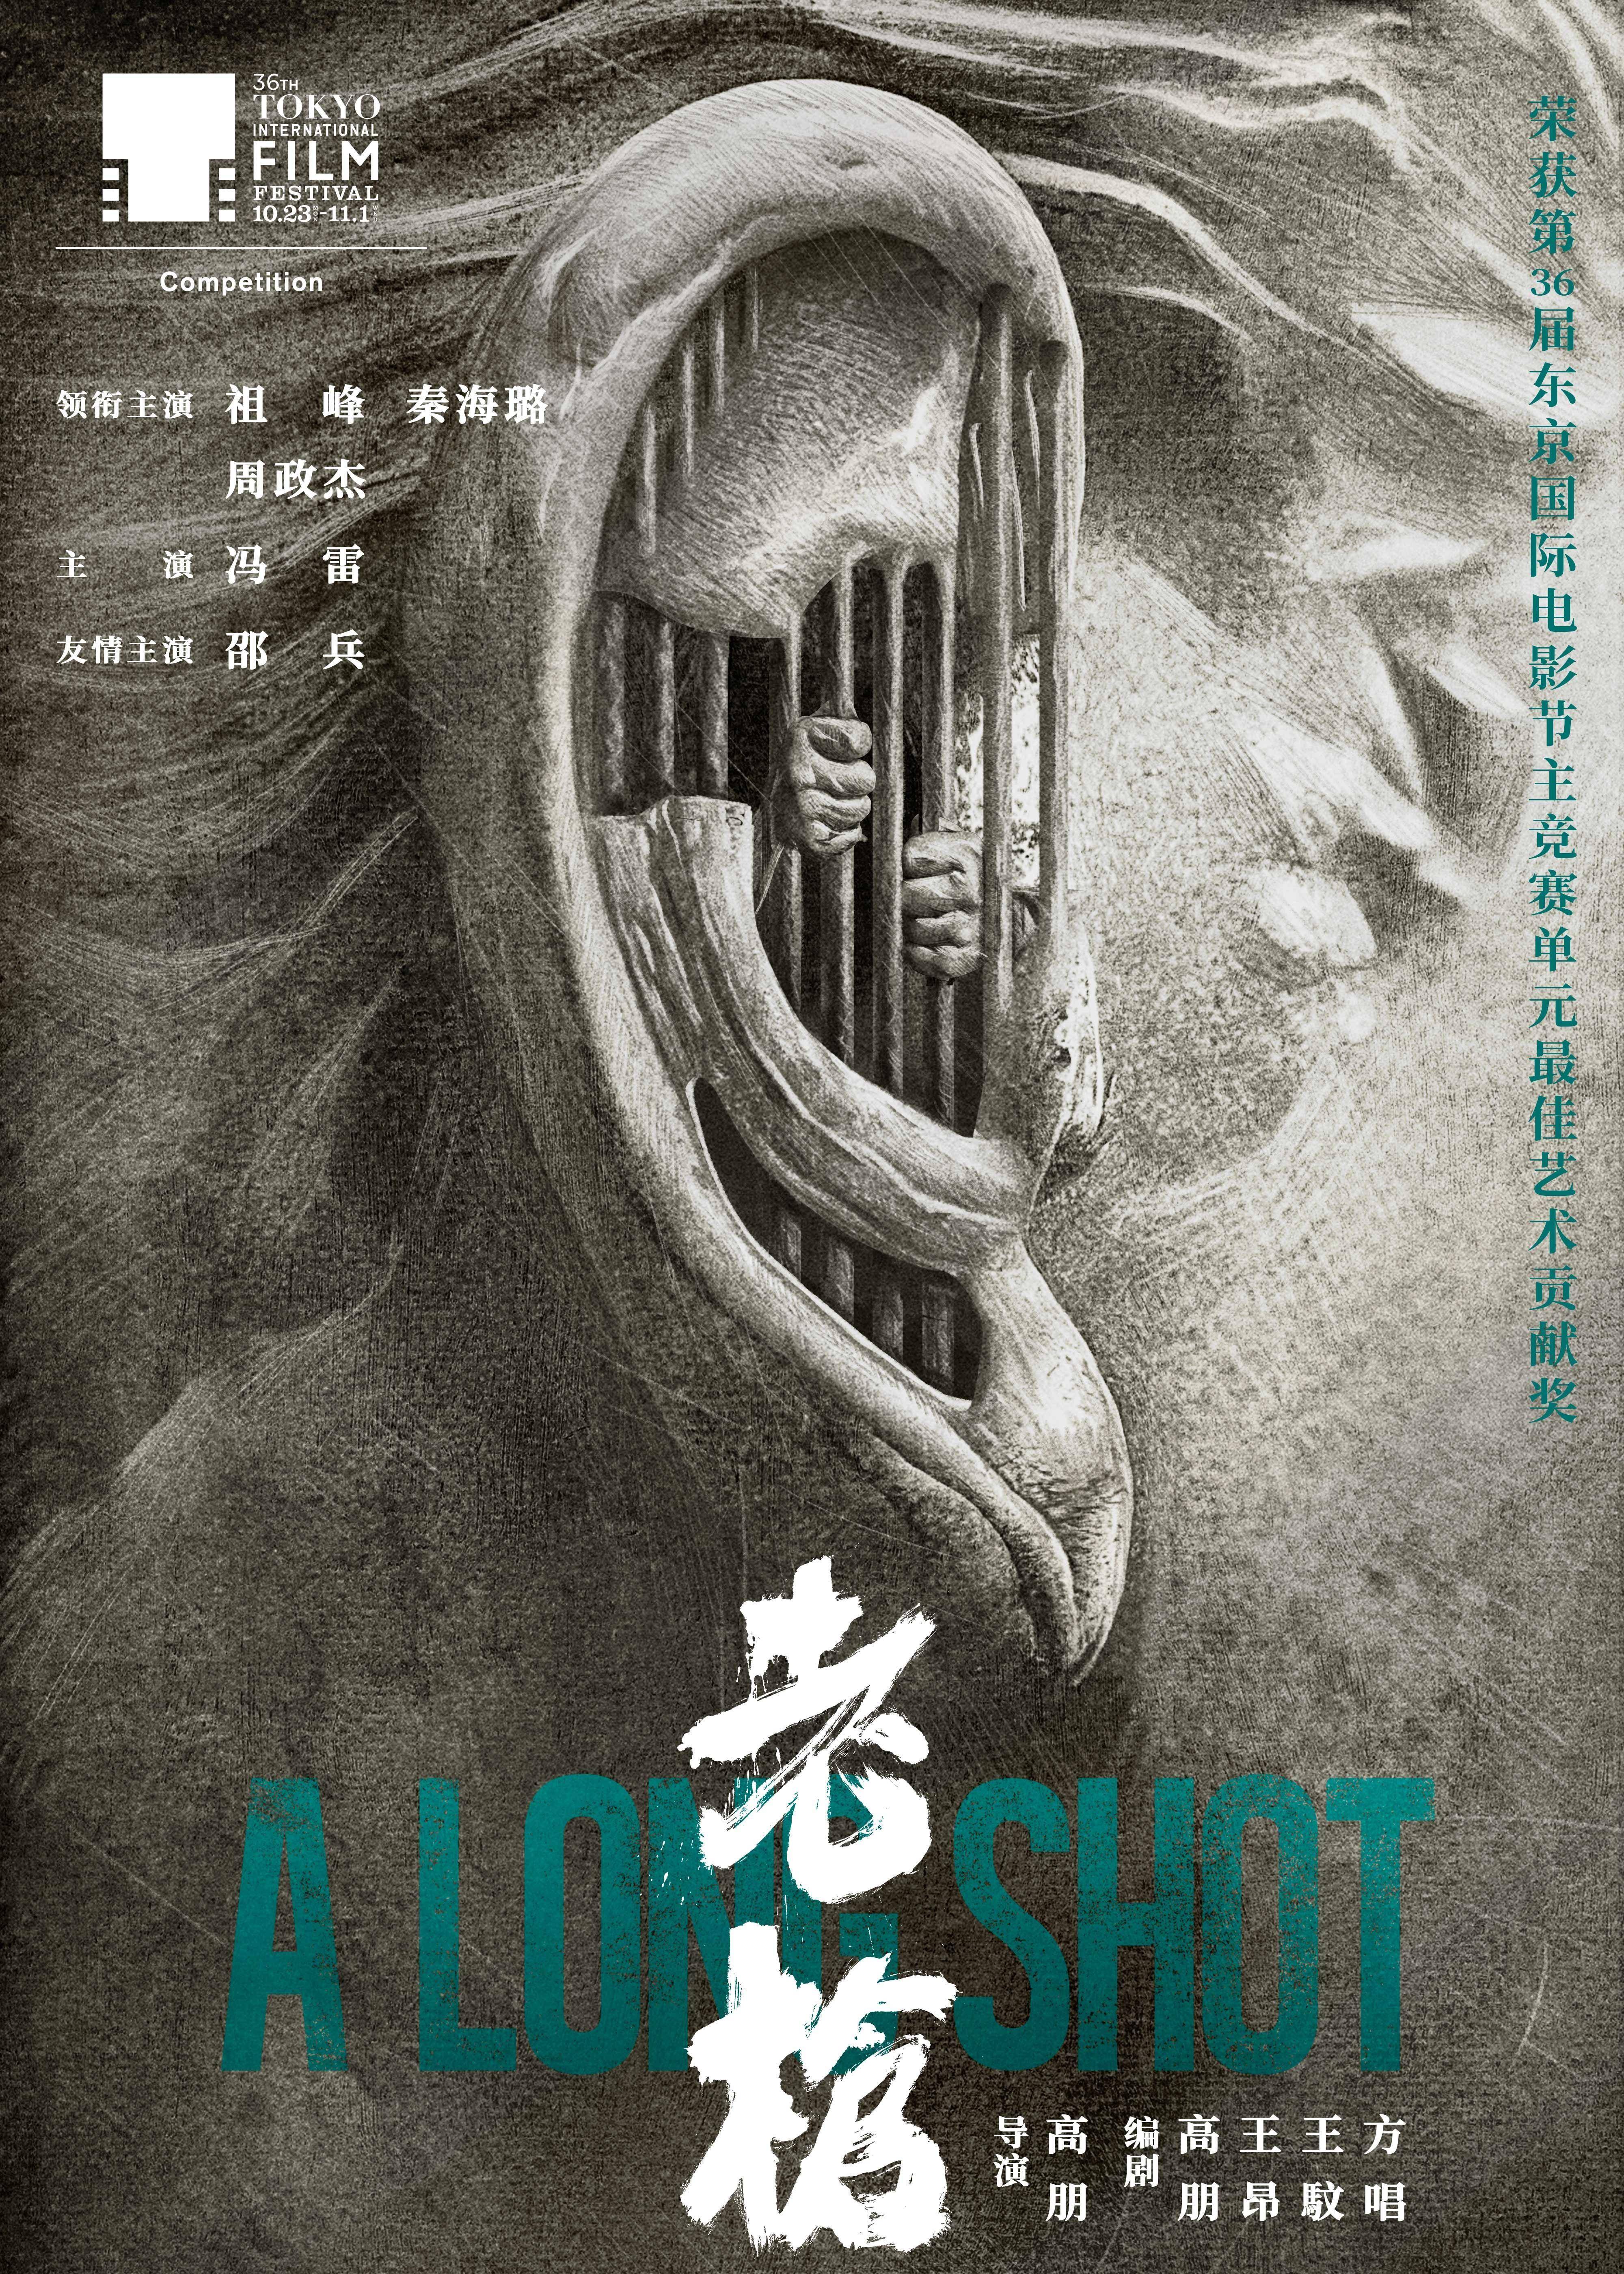 电影《老枪》由高朋执导,主要演员包括祖峰,秦海璐,周政杰和冯雷,并由